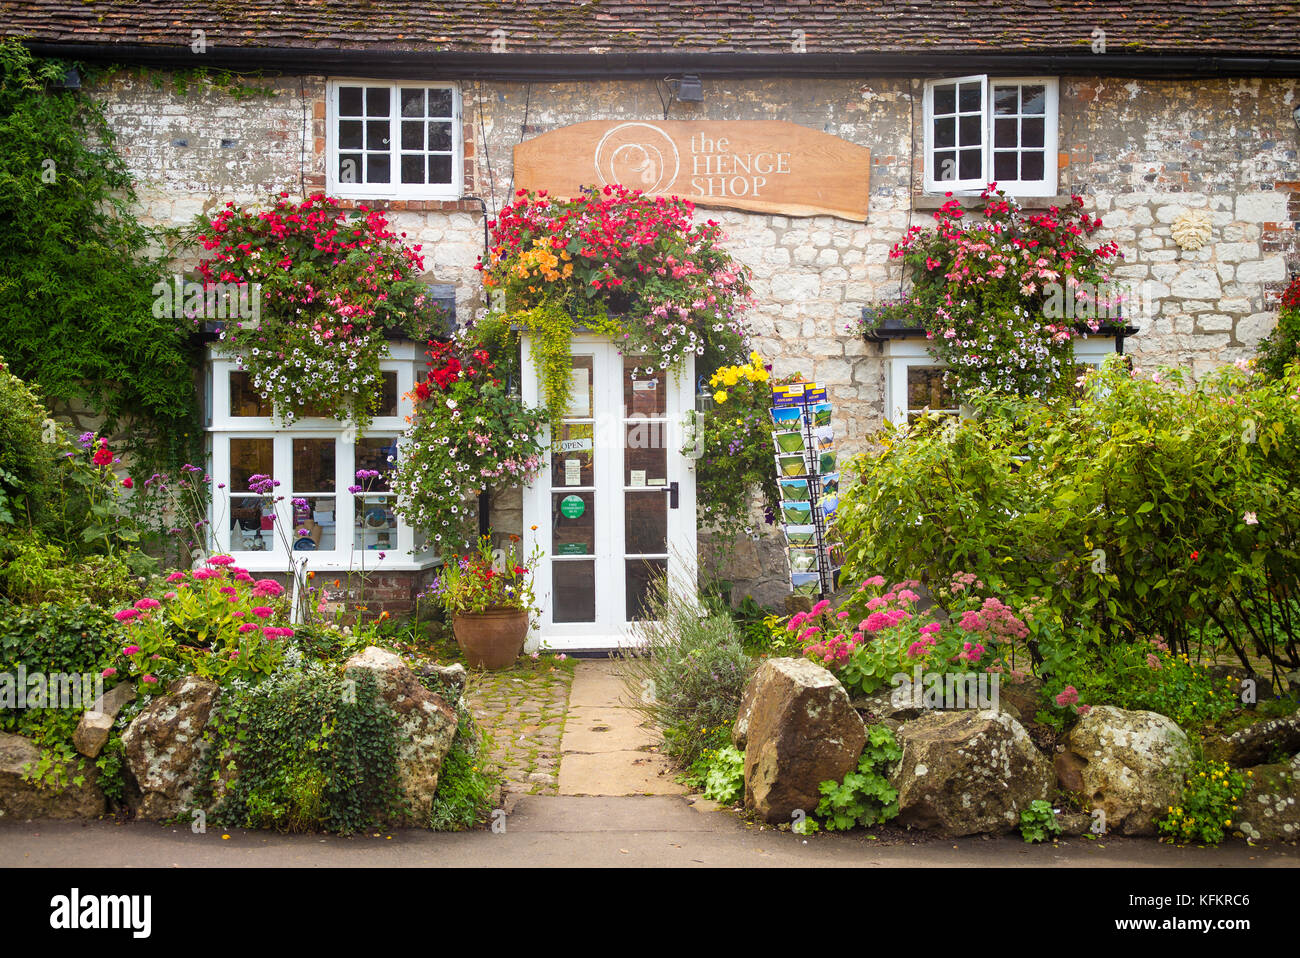 Le Henge Shop à Avebury Wiltshire en Angleterre avec un jardin typiquement anglais Banque D'Images